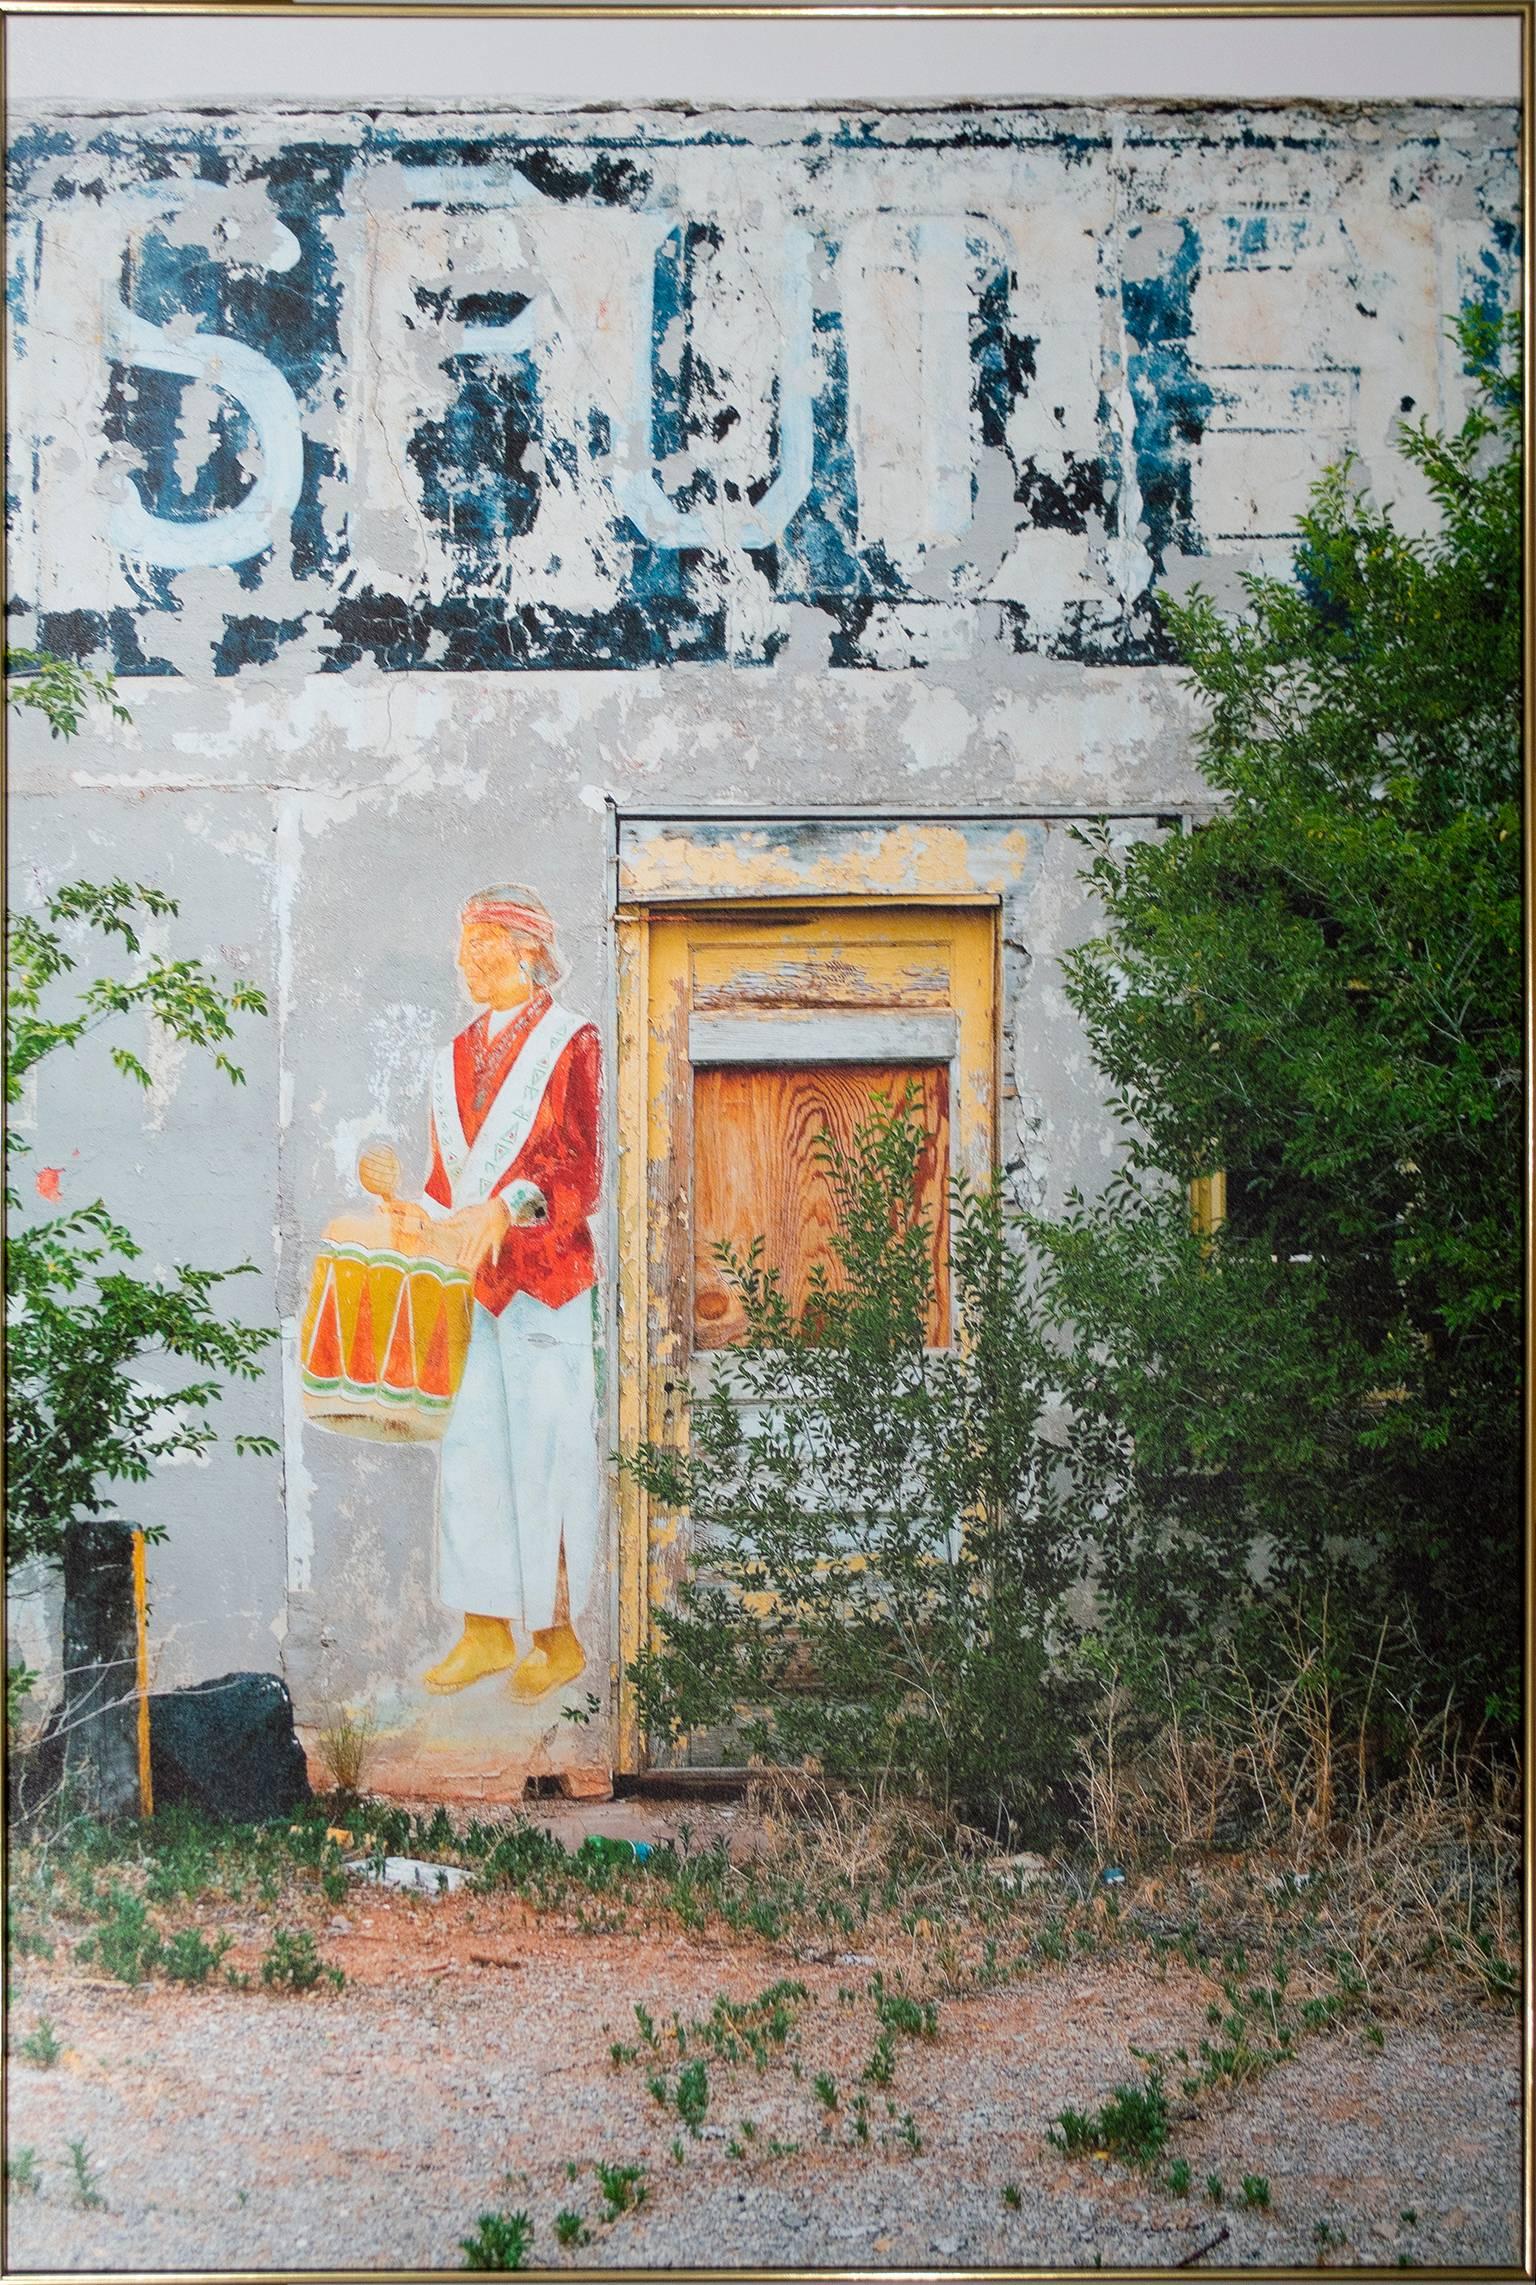 "Curio Shop Entrance, New Mexico" ist eine auf Leinwand gedruckte Farbfotografie, die unten rechts vom Künstler Thomas Ferderbar signiert ist. Es zeigt eine graue Wand mit verblassenden gemalten Verzierungen. 

Kunstwerk Größe: 55" x 37 3/4"
Rahmen